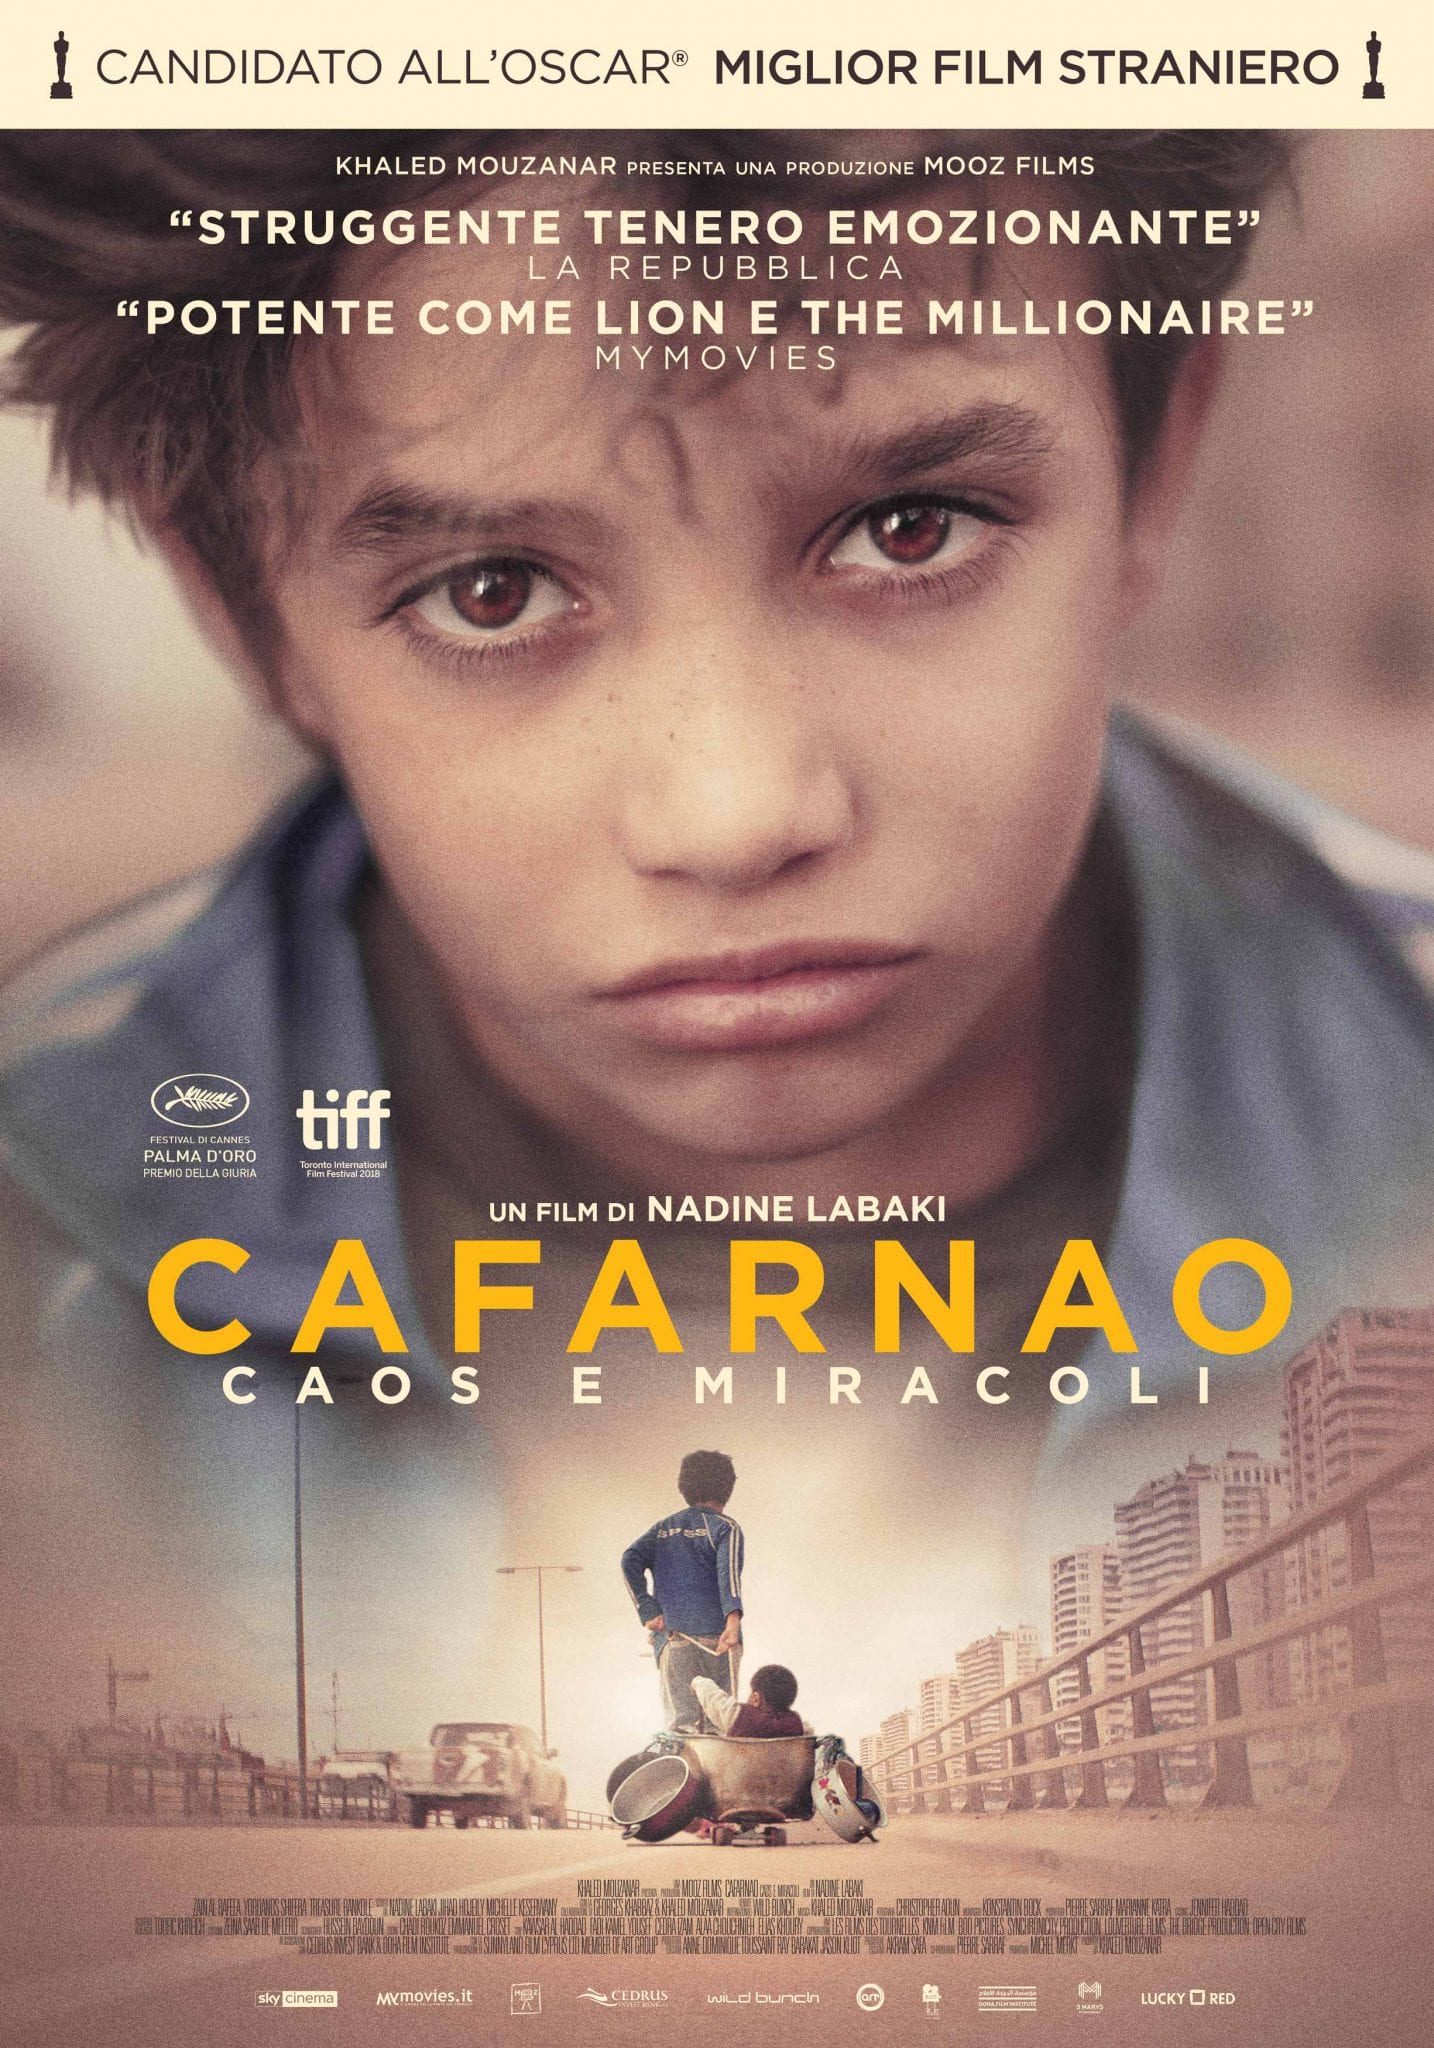 Cafarnao – caos e miracoli, al cinema il nuovo film di Nadine Labaki